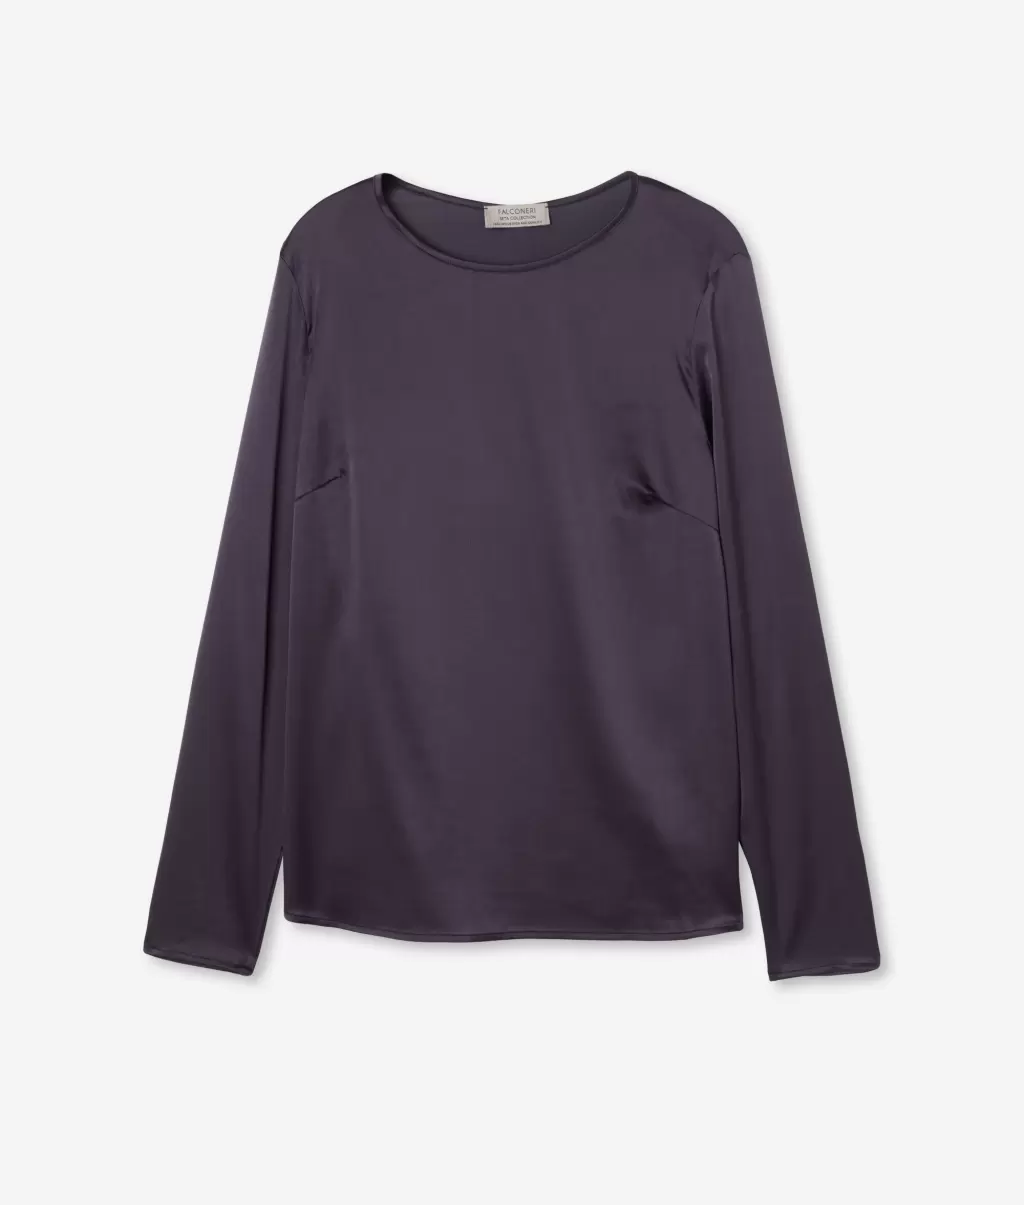 Koszule I Bluzki Violet Falconeri Bluzka Z Okrągłym Dekoltem Z Satyny Jedwabnej Kobieta - 4